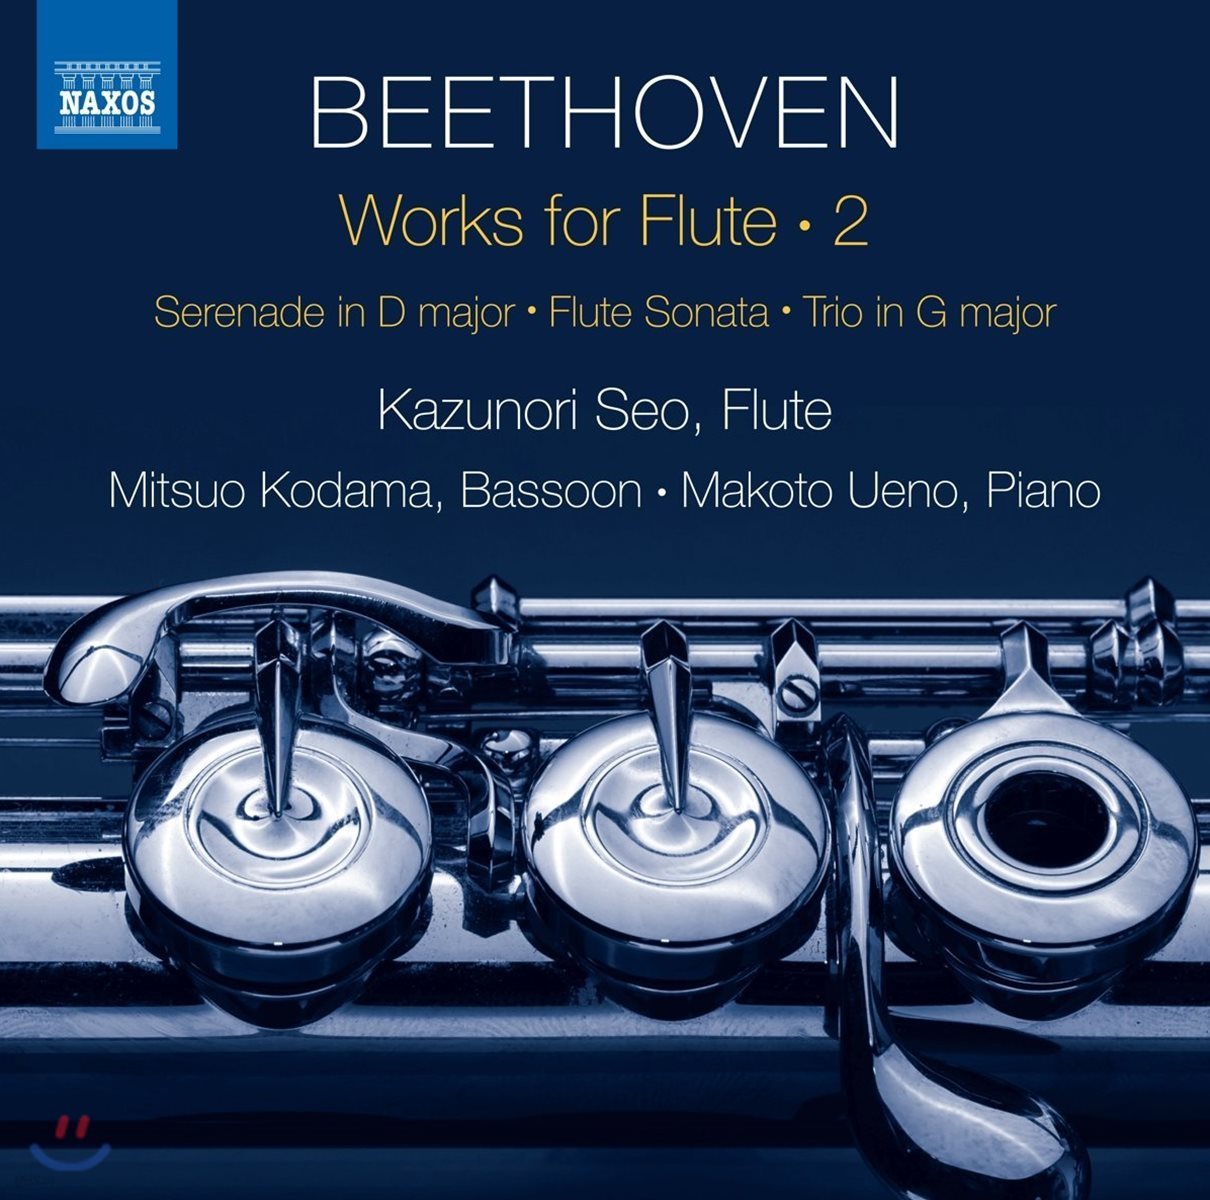 Kazunori Seo 베토벤 : 플루트 작품 2집 - 플루트와 피아노를 위한 세레나데, 플루트 소나타 외 (Beethoven: Works For Flute 2)